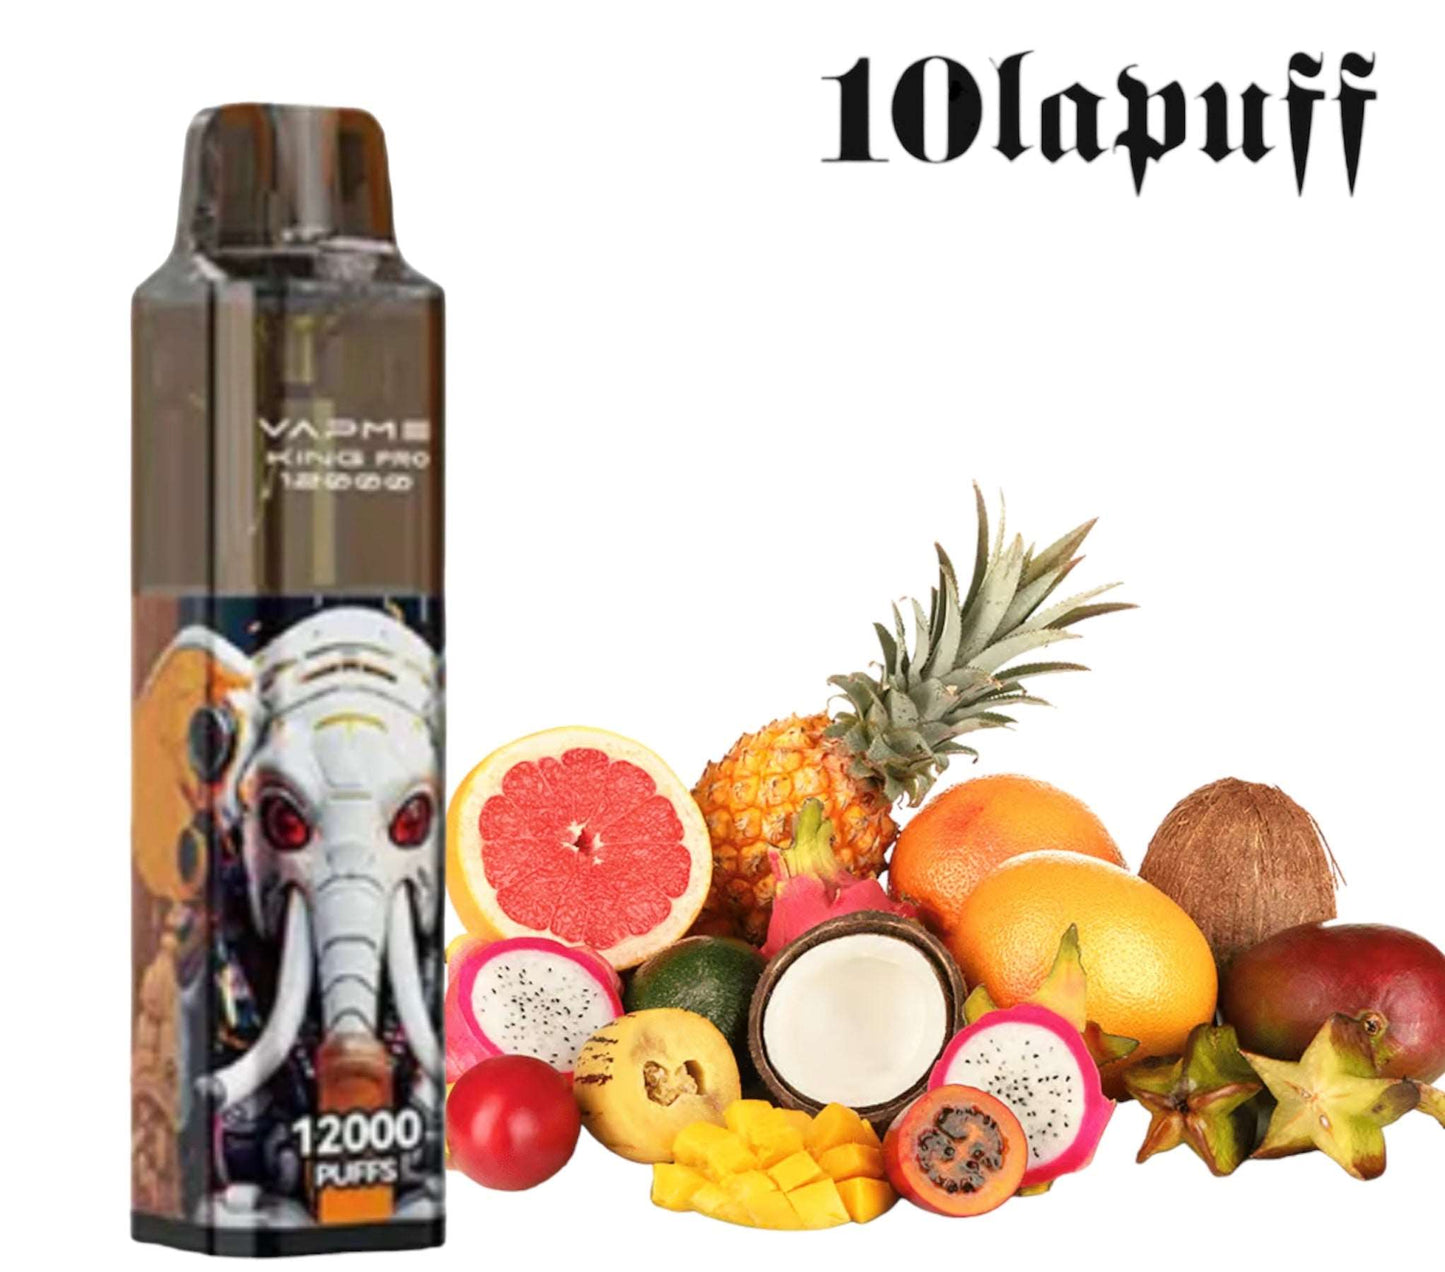 PUFF 12000 VAPME PRO - 10 Parfums -